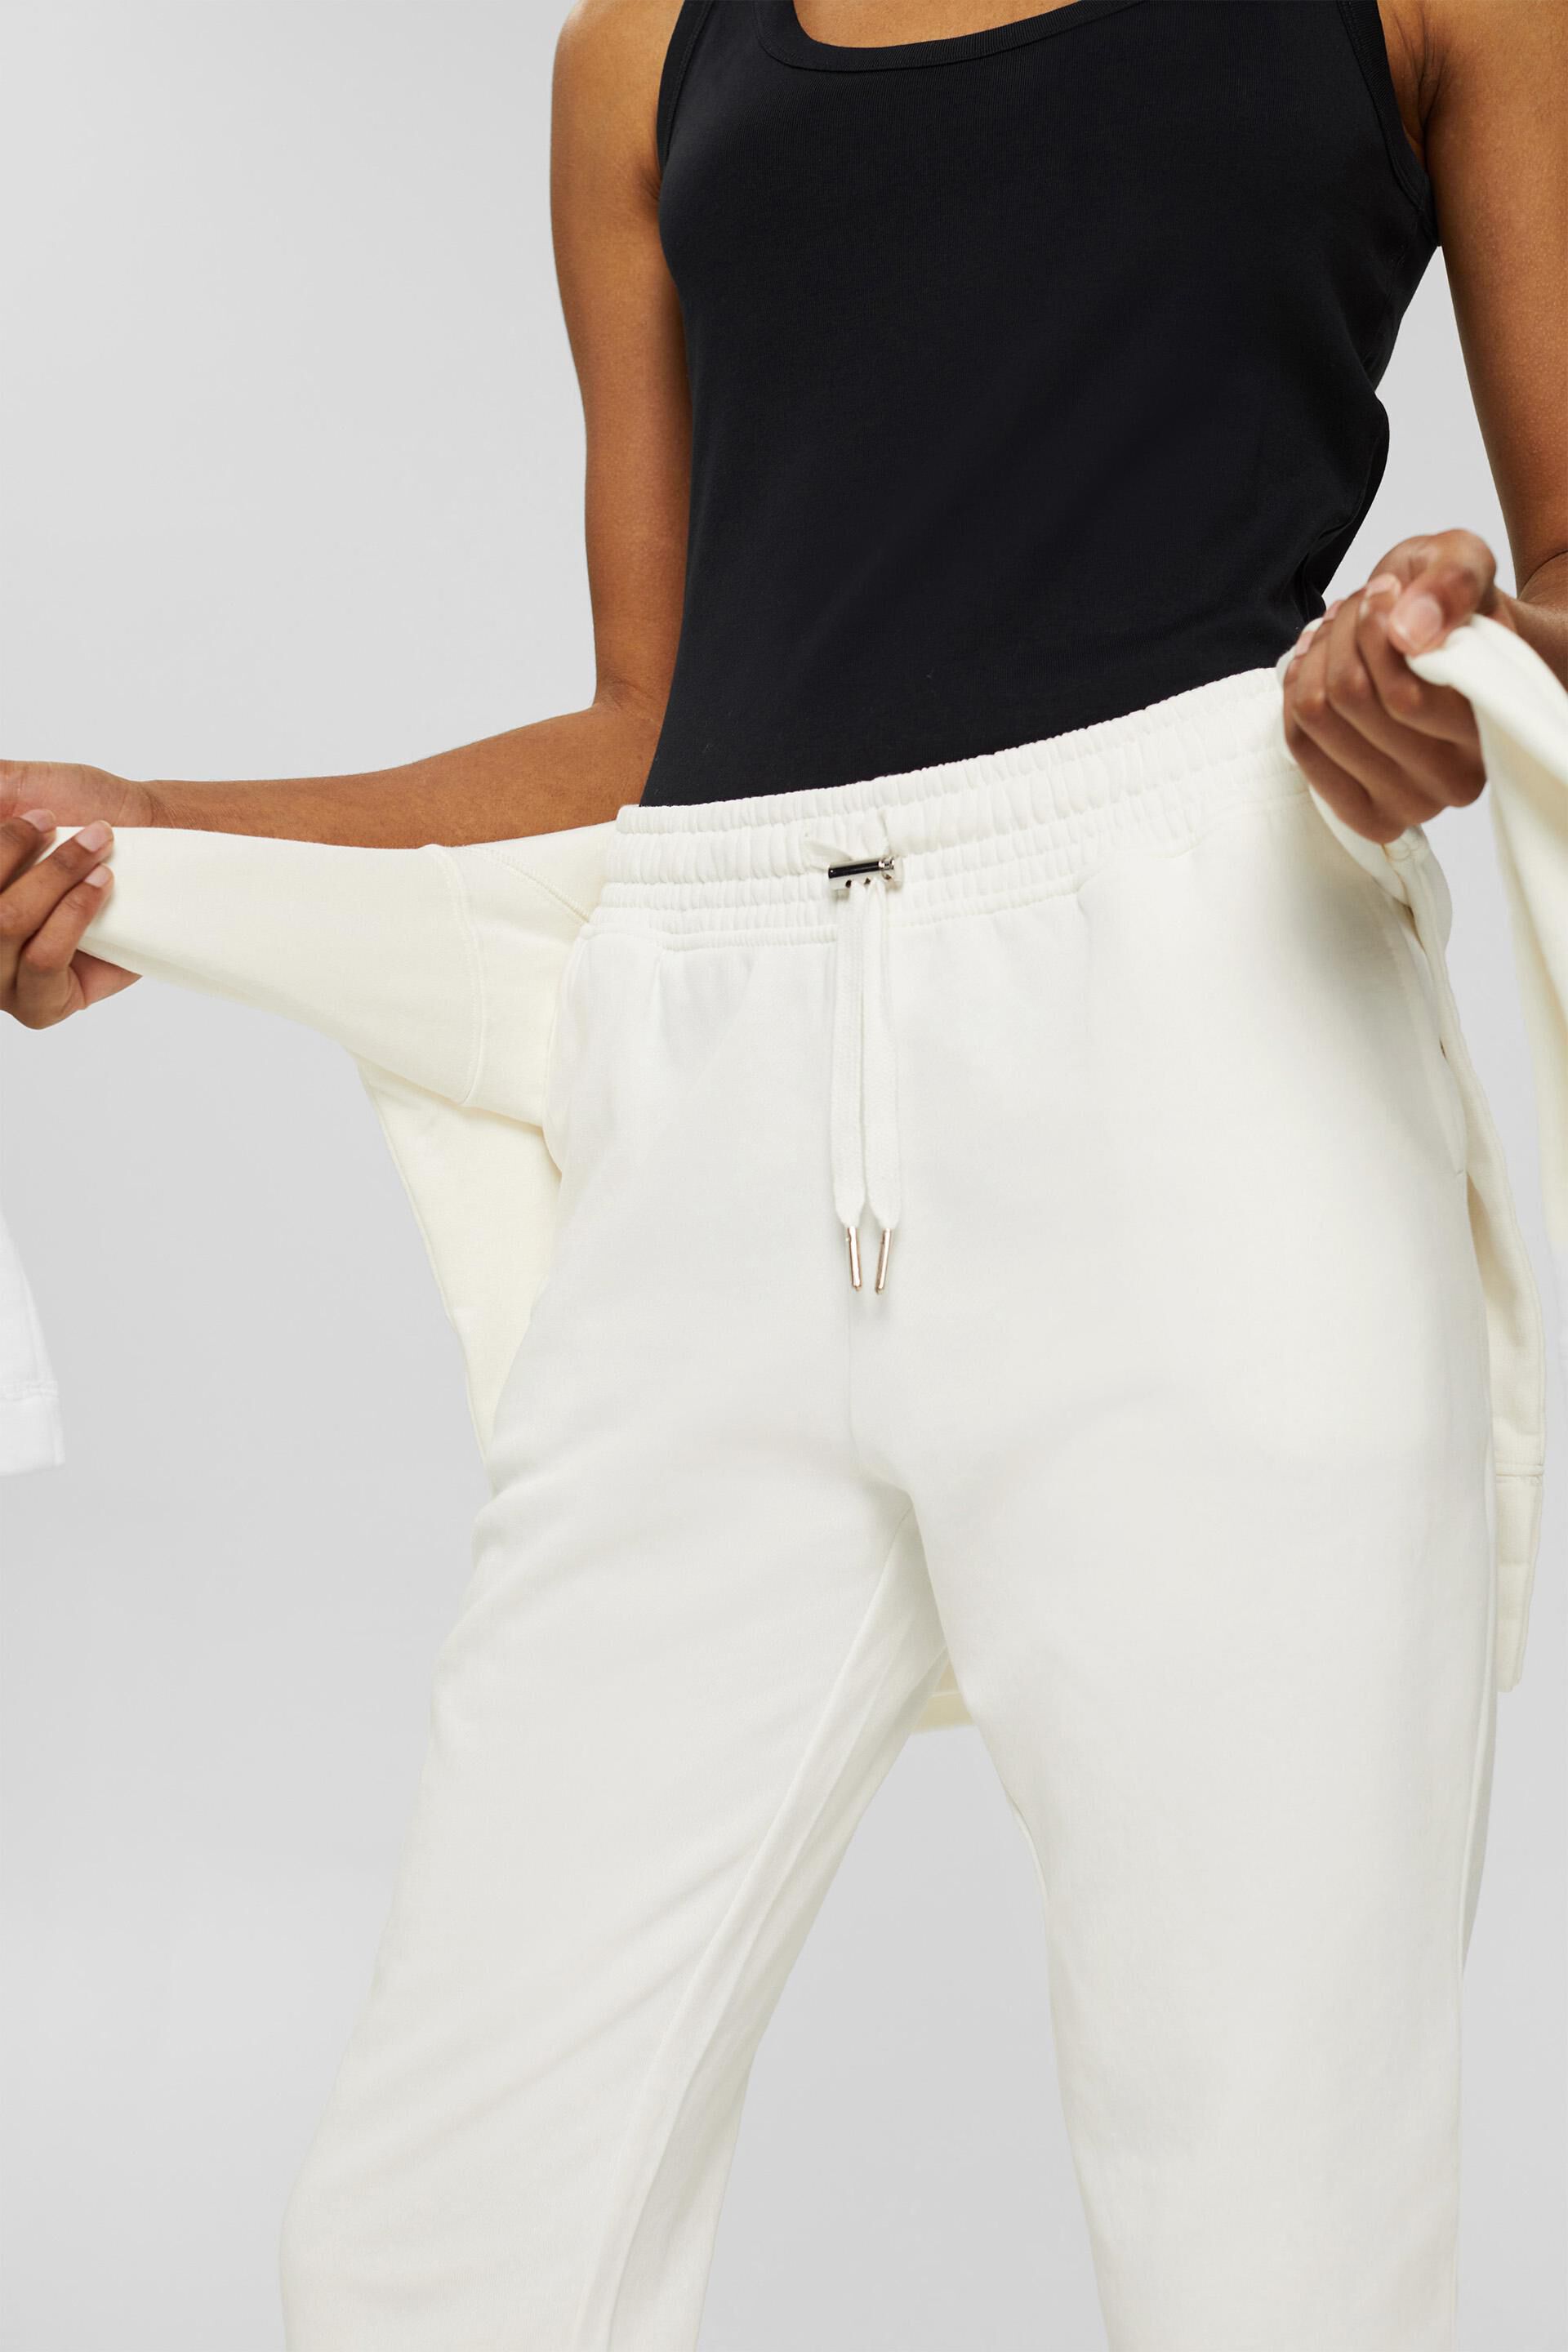 Pantalon style jogging 100% coton, Femme